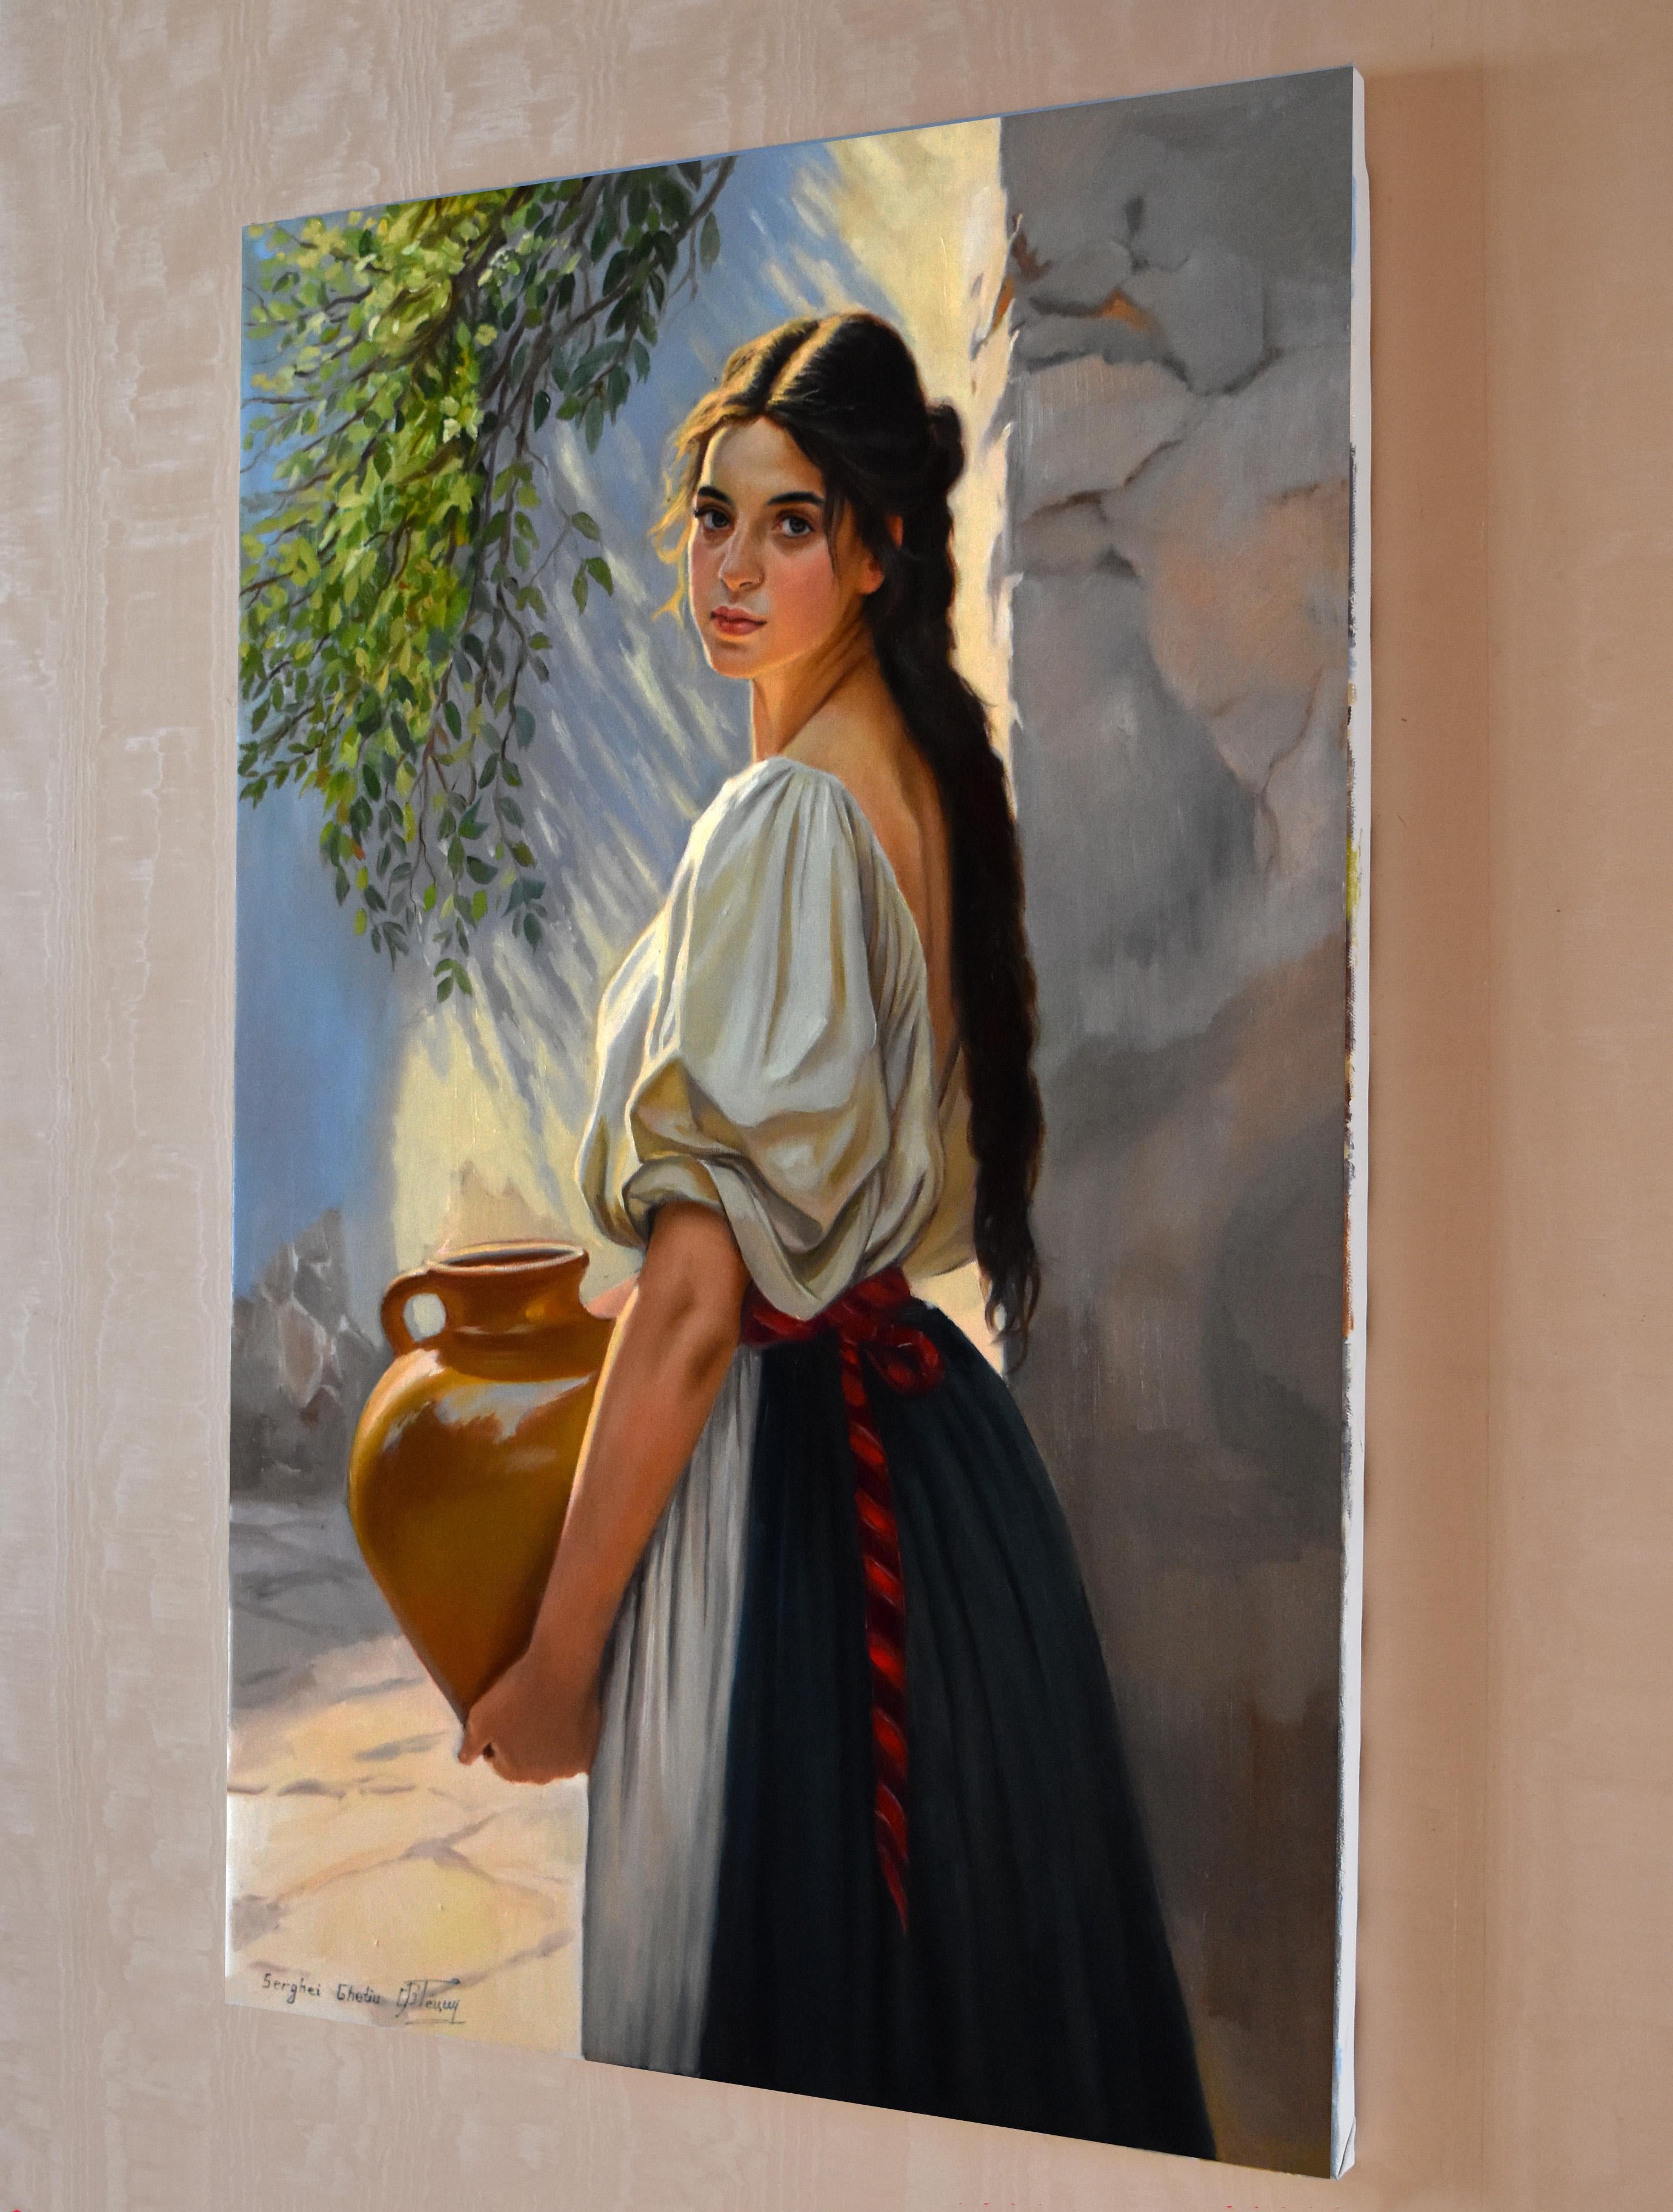 The Mediterranean girl II - Realist Painting by Serghei Ghetiu